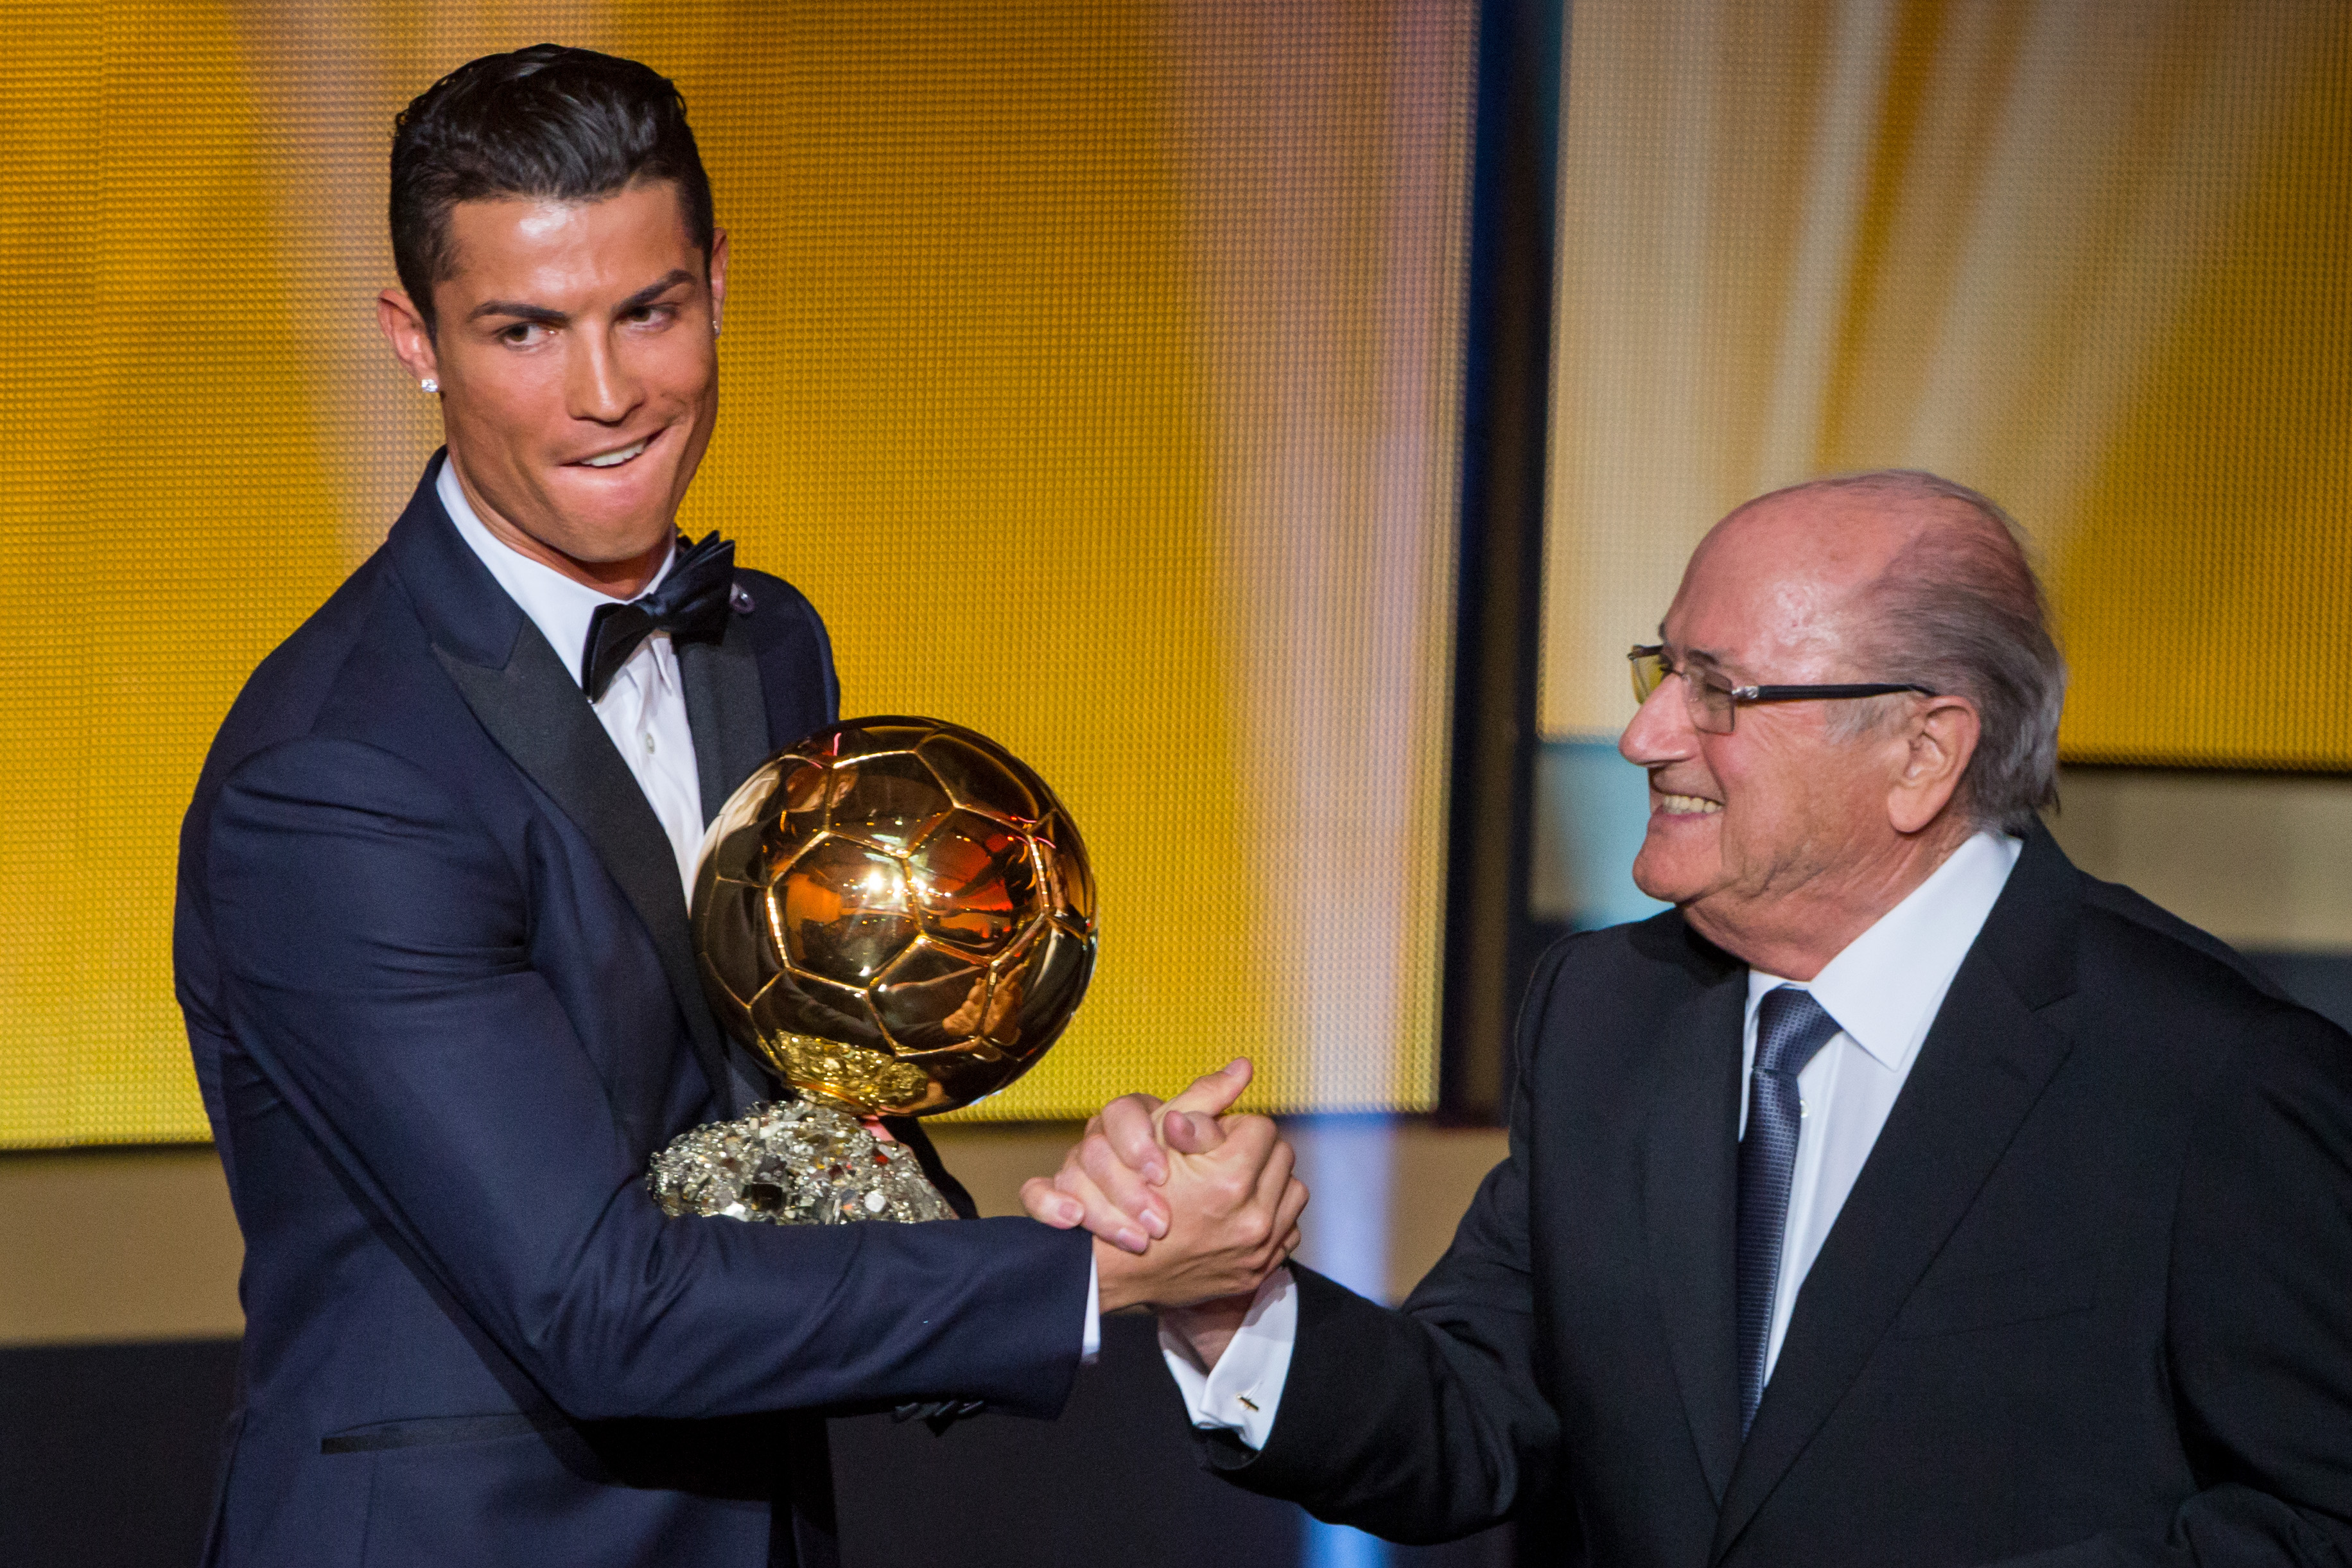 Cristiano Ronaldo wins FIFA Ballon d'Or 2014 